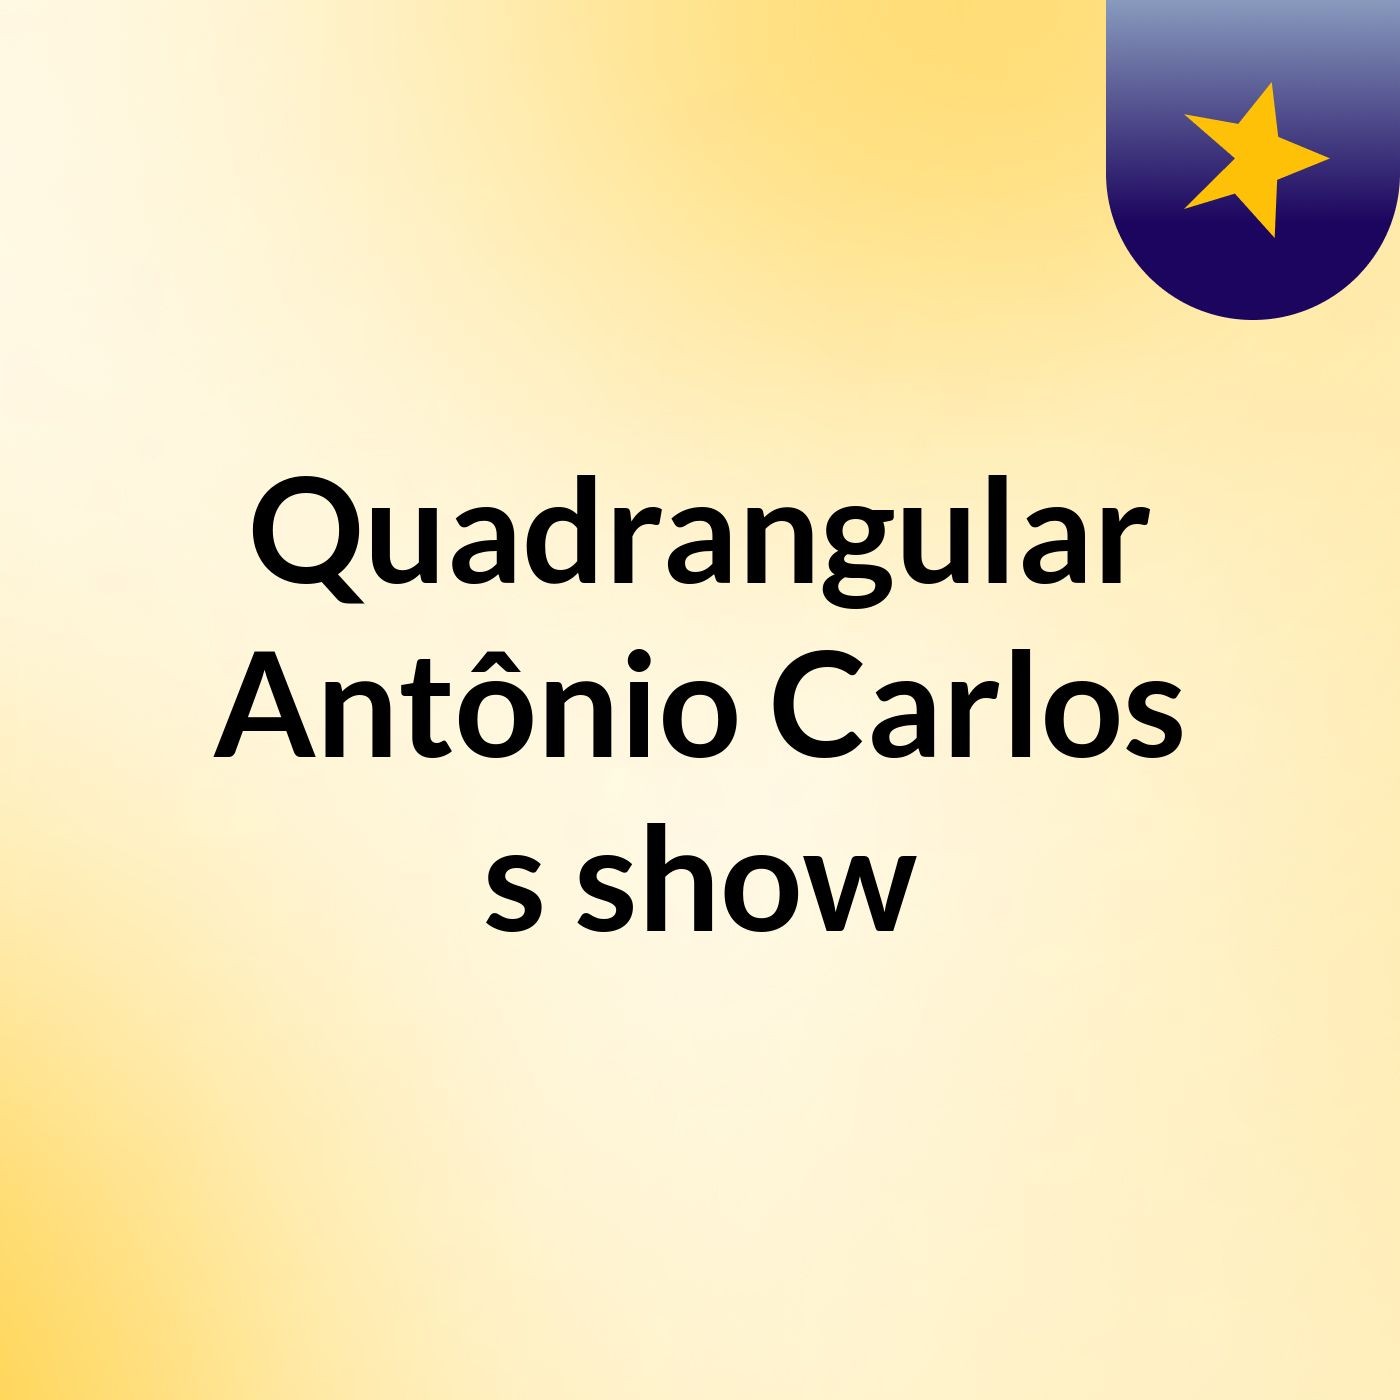 Quadrangular Antônio Carlos's show